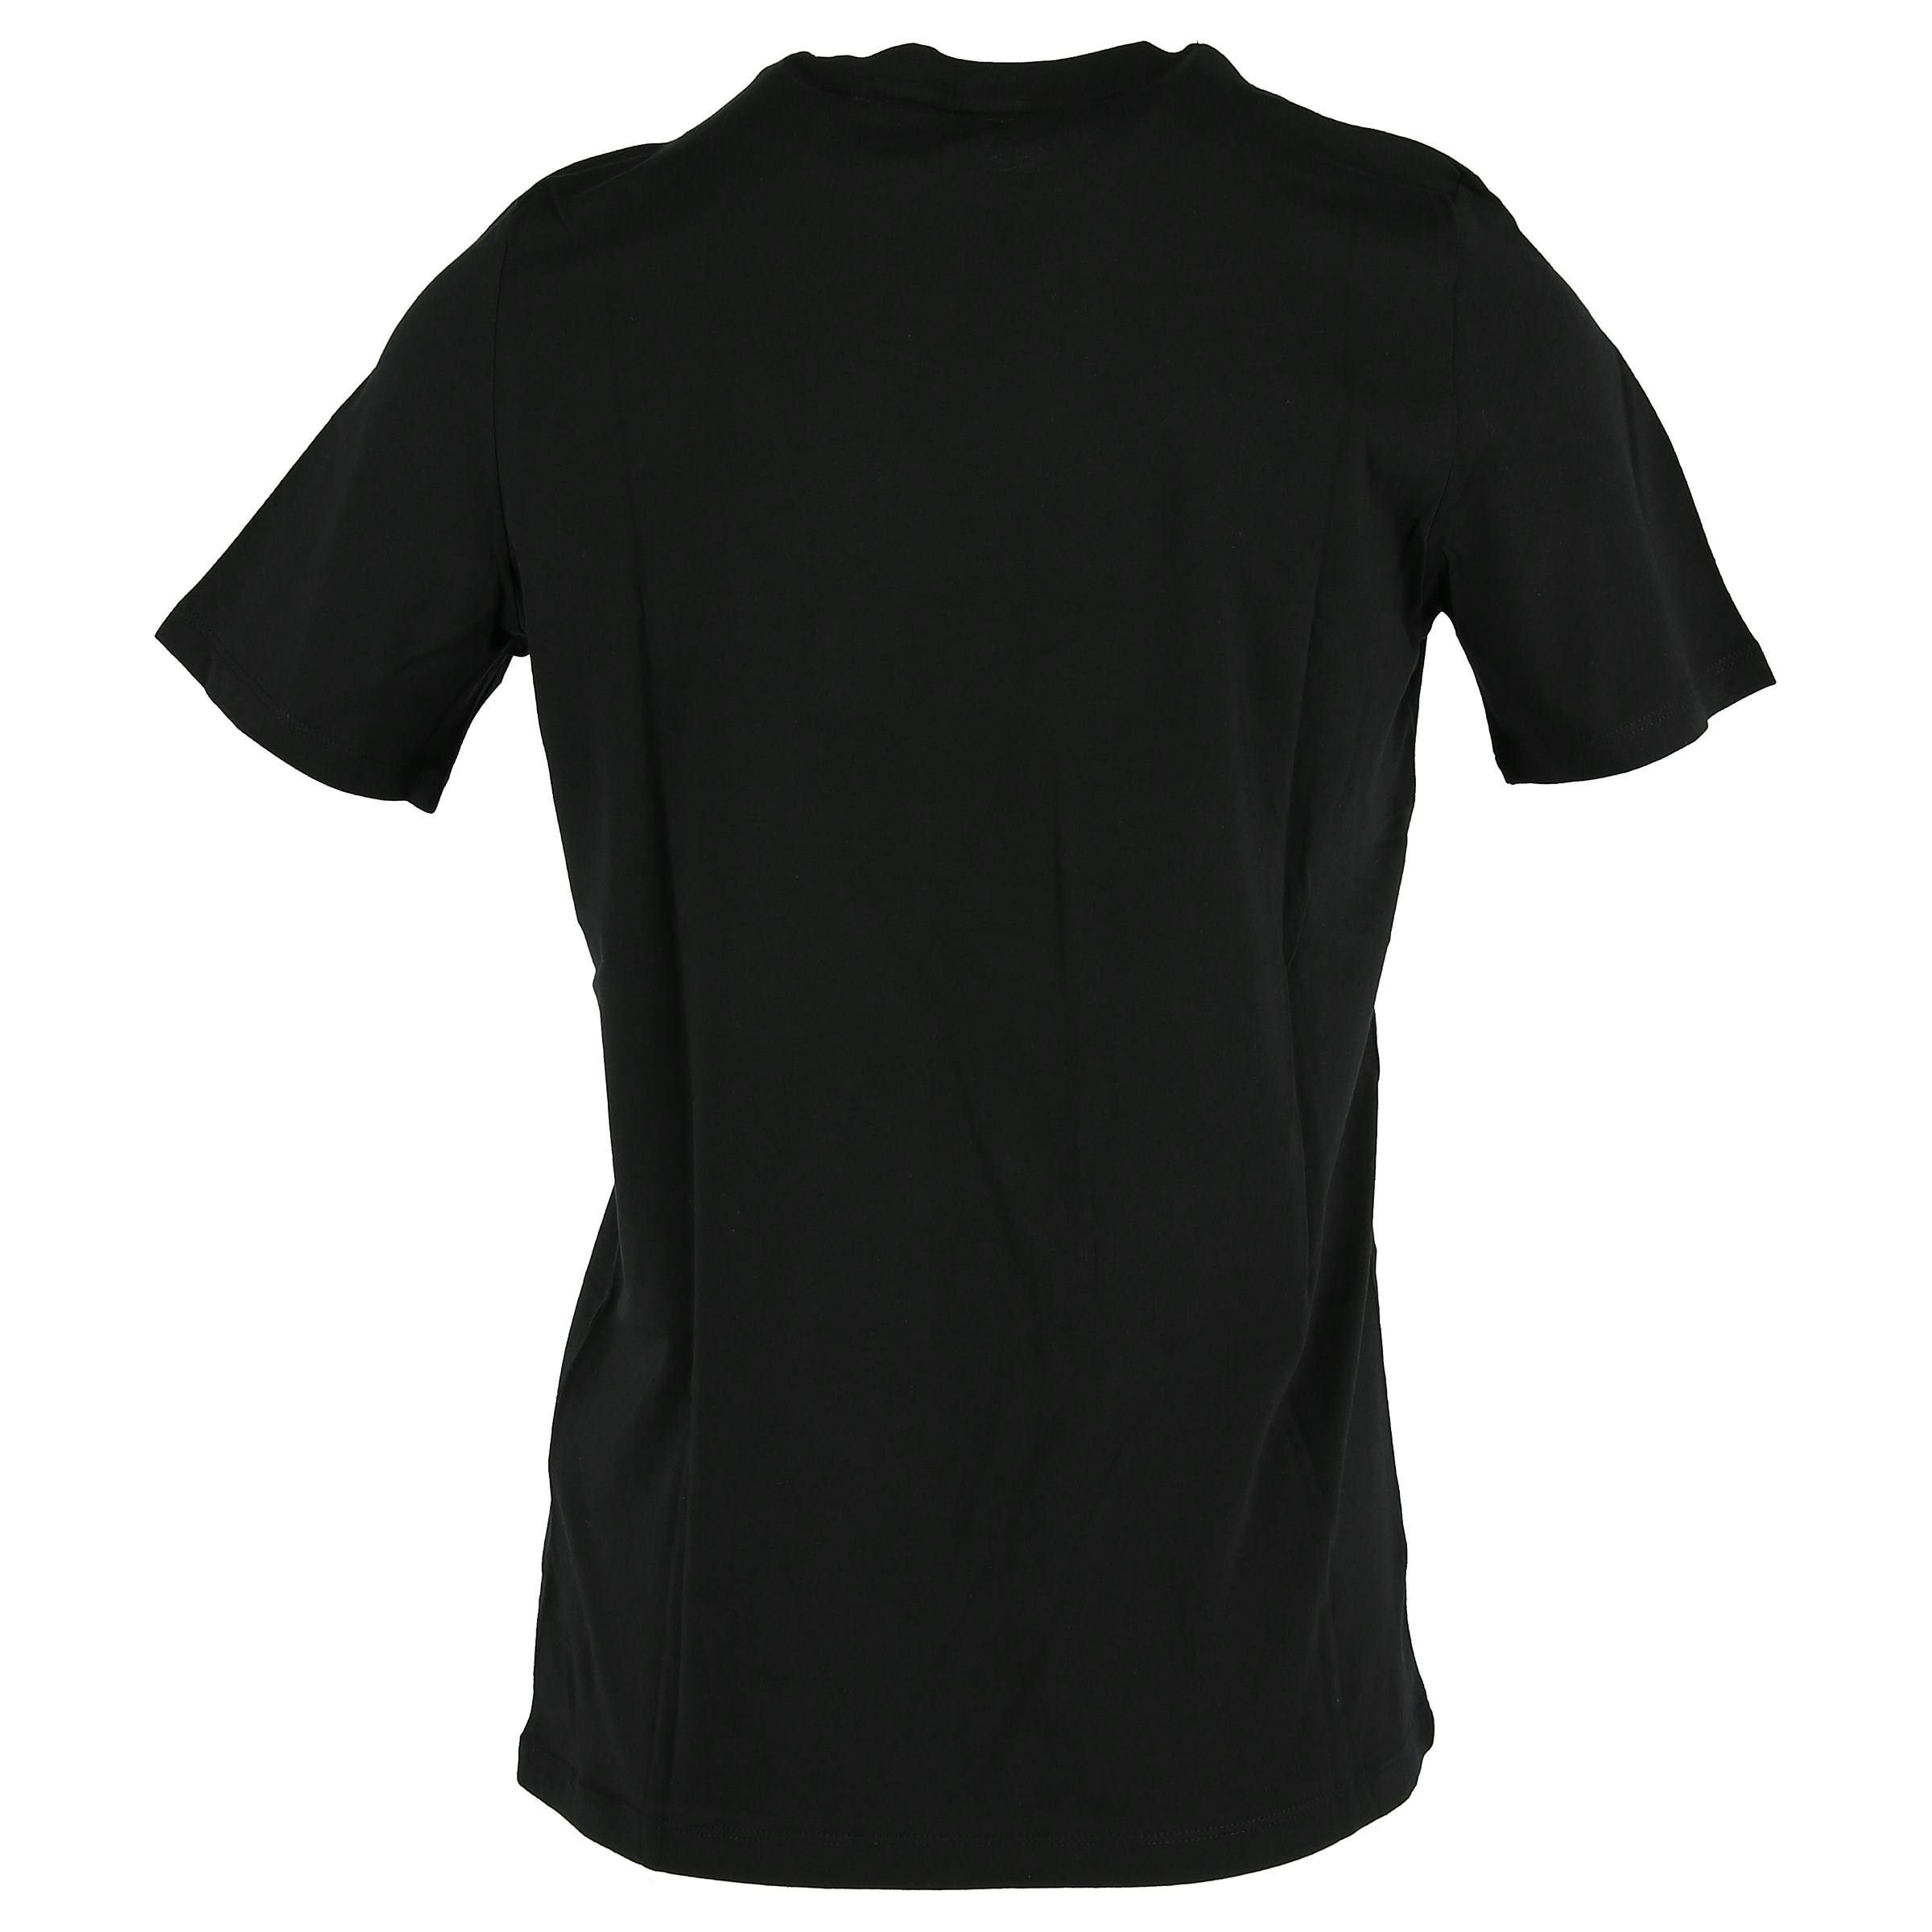 Umbro Retro 4 T-shirt 